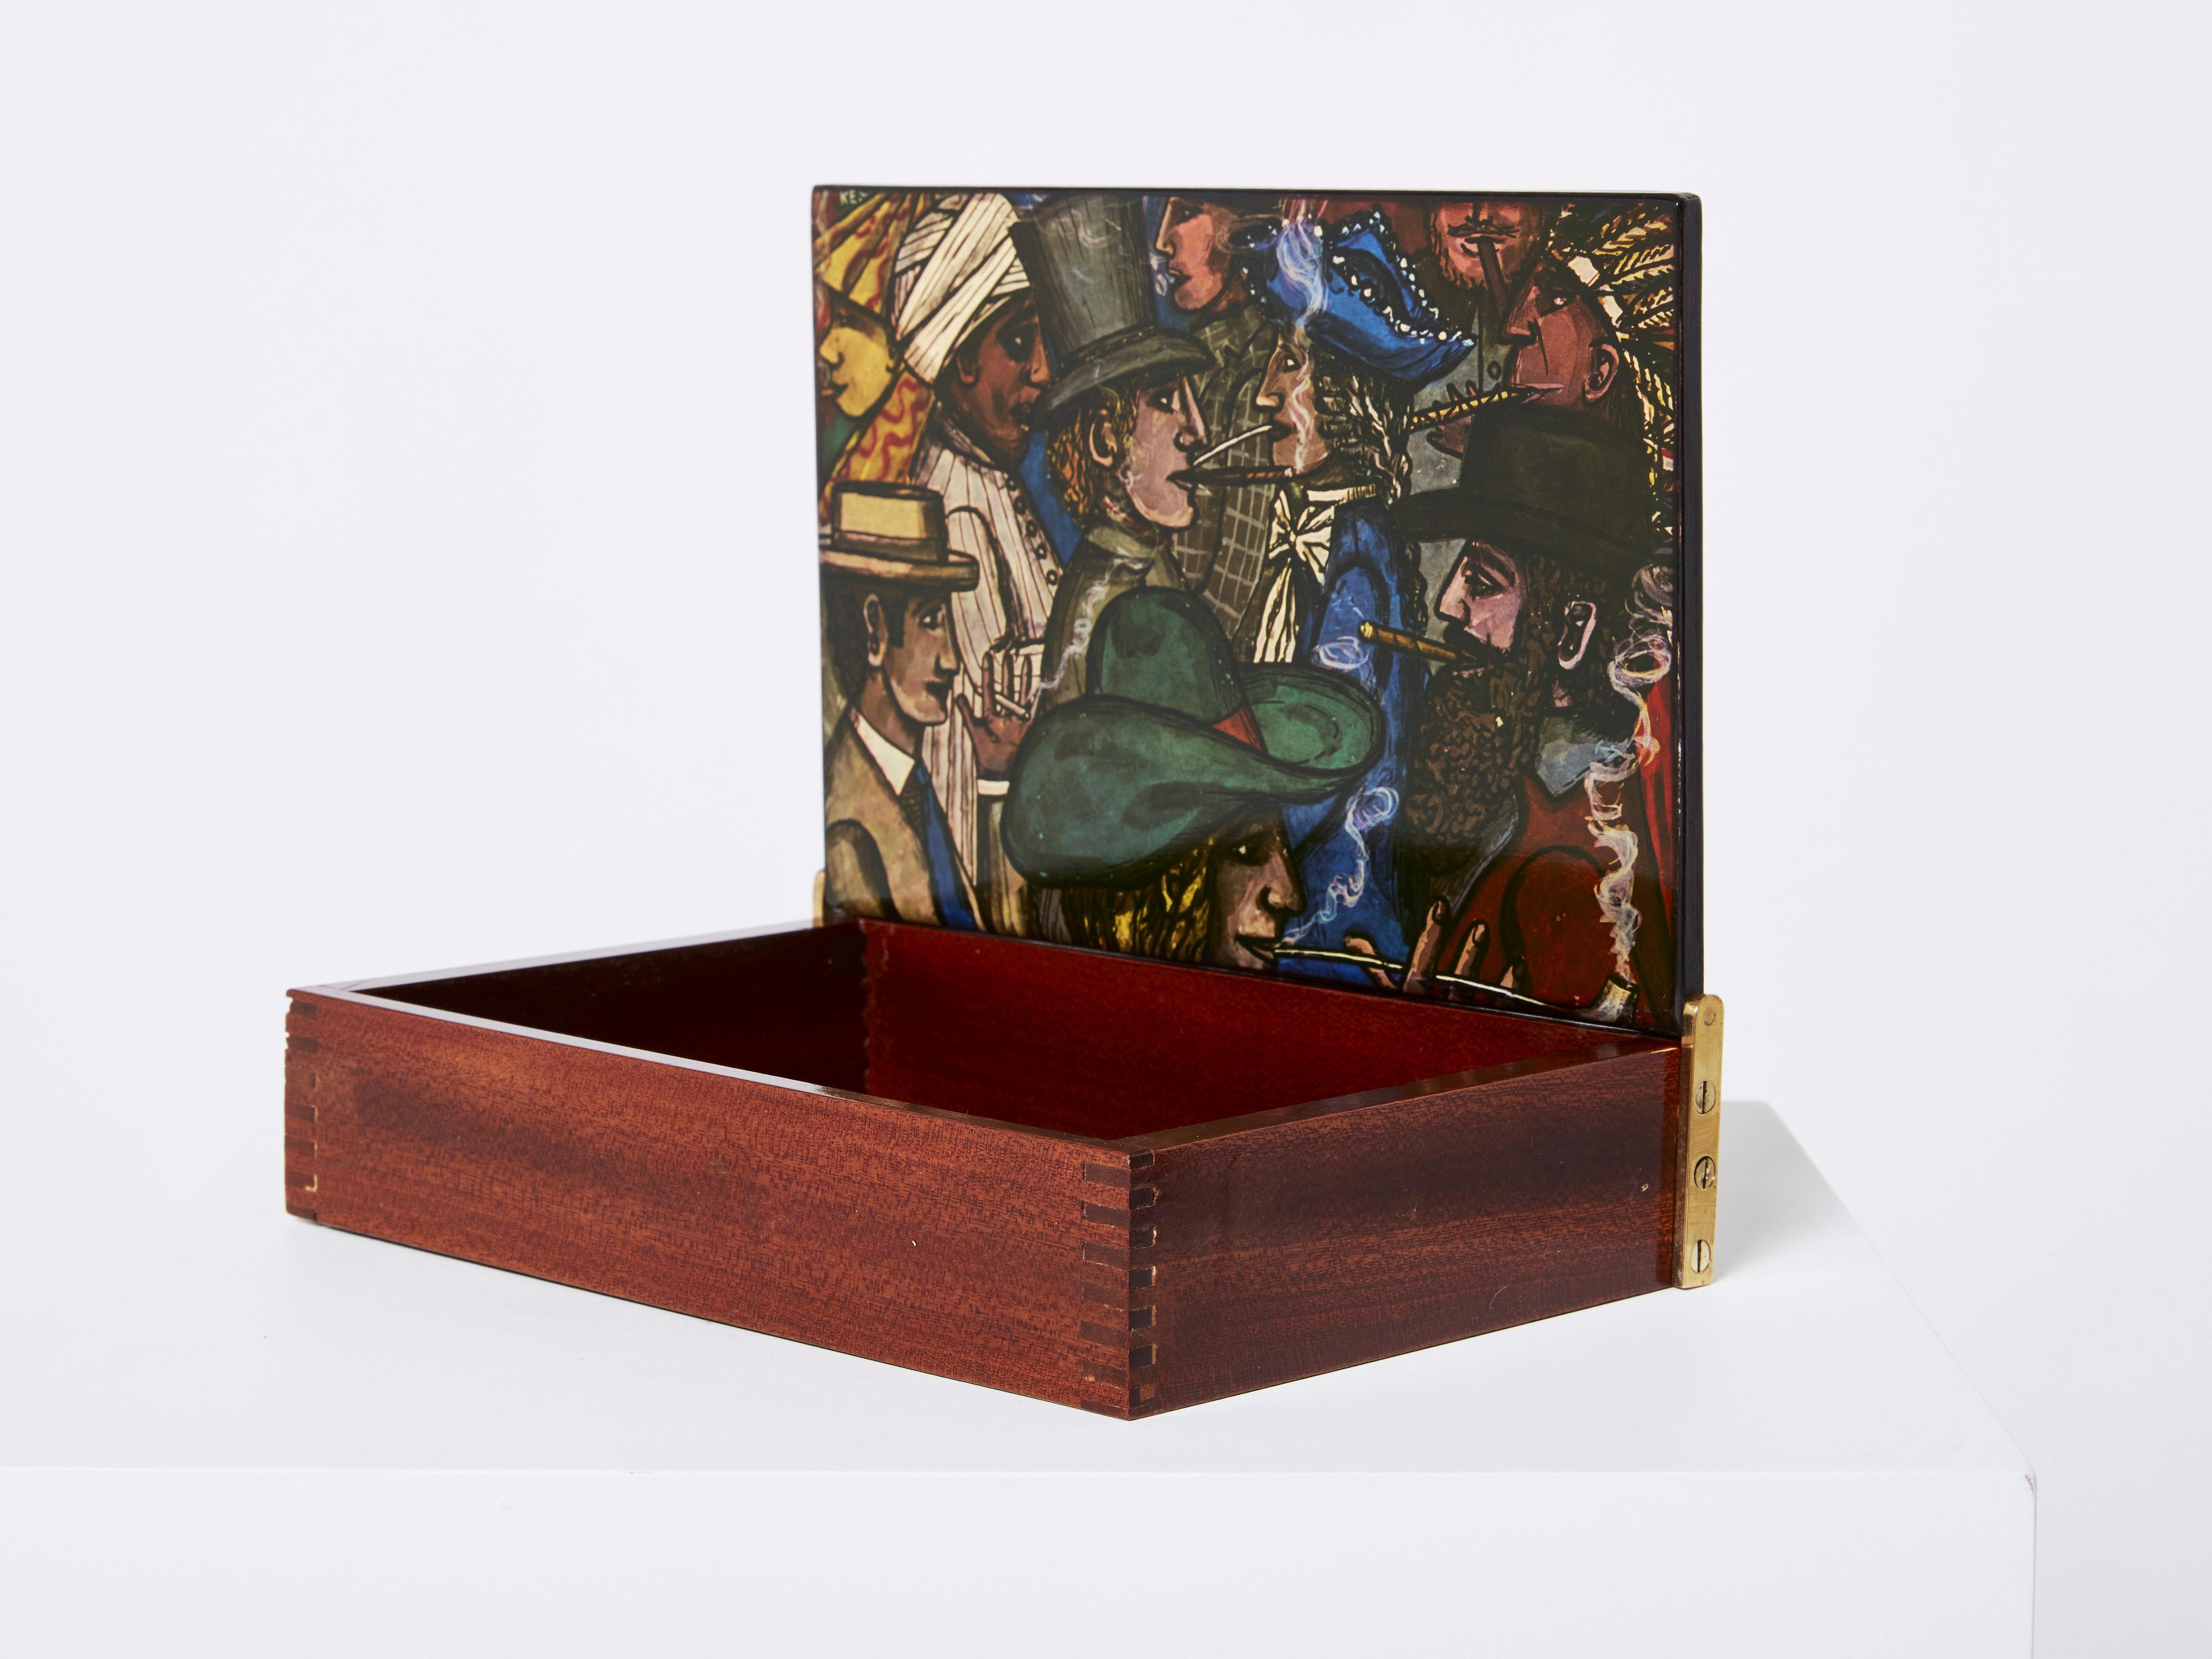 Schöne Piero Fornasetti dekorative Box in Italien in den 1950er Jahren gemacht. Dieses Kästchen ist aus Mahagoniholz geschnitzt, mit lackiertem Holz auf beiden Seiten des Deckels und seitlichen Messingscharnieren. Ein Sammlerstück, perfekt als